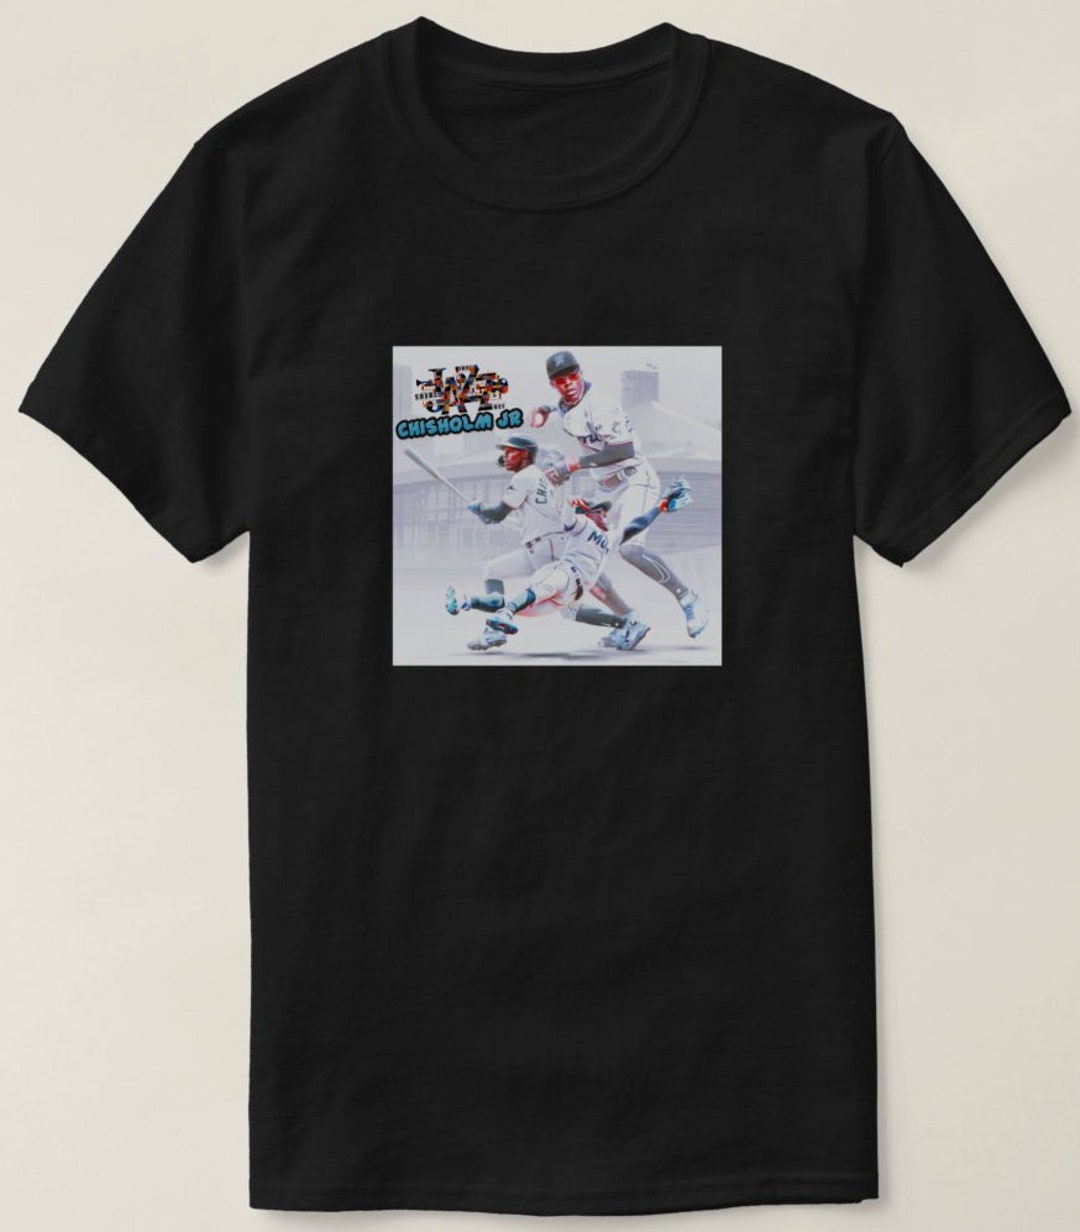 Jazz Chisholm Jr. Miami Marlins Nike Name & Number T-Shirt - Black